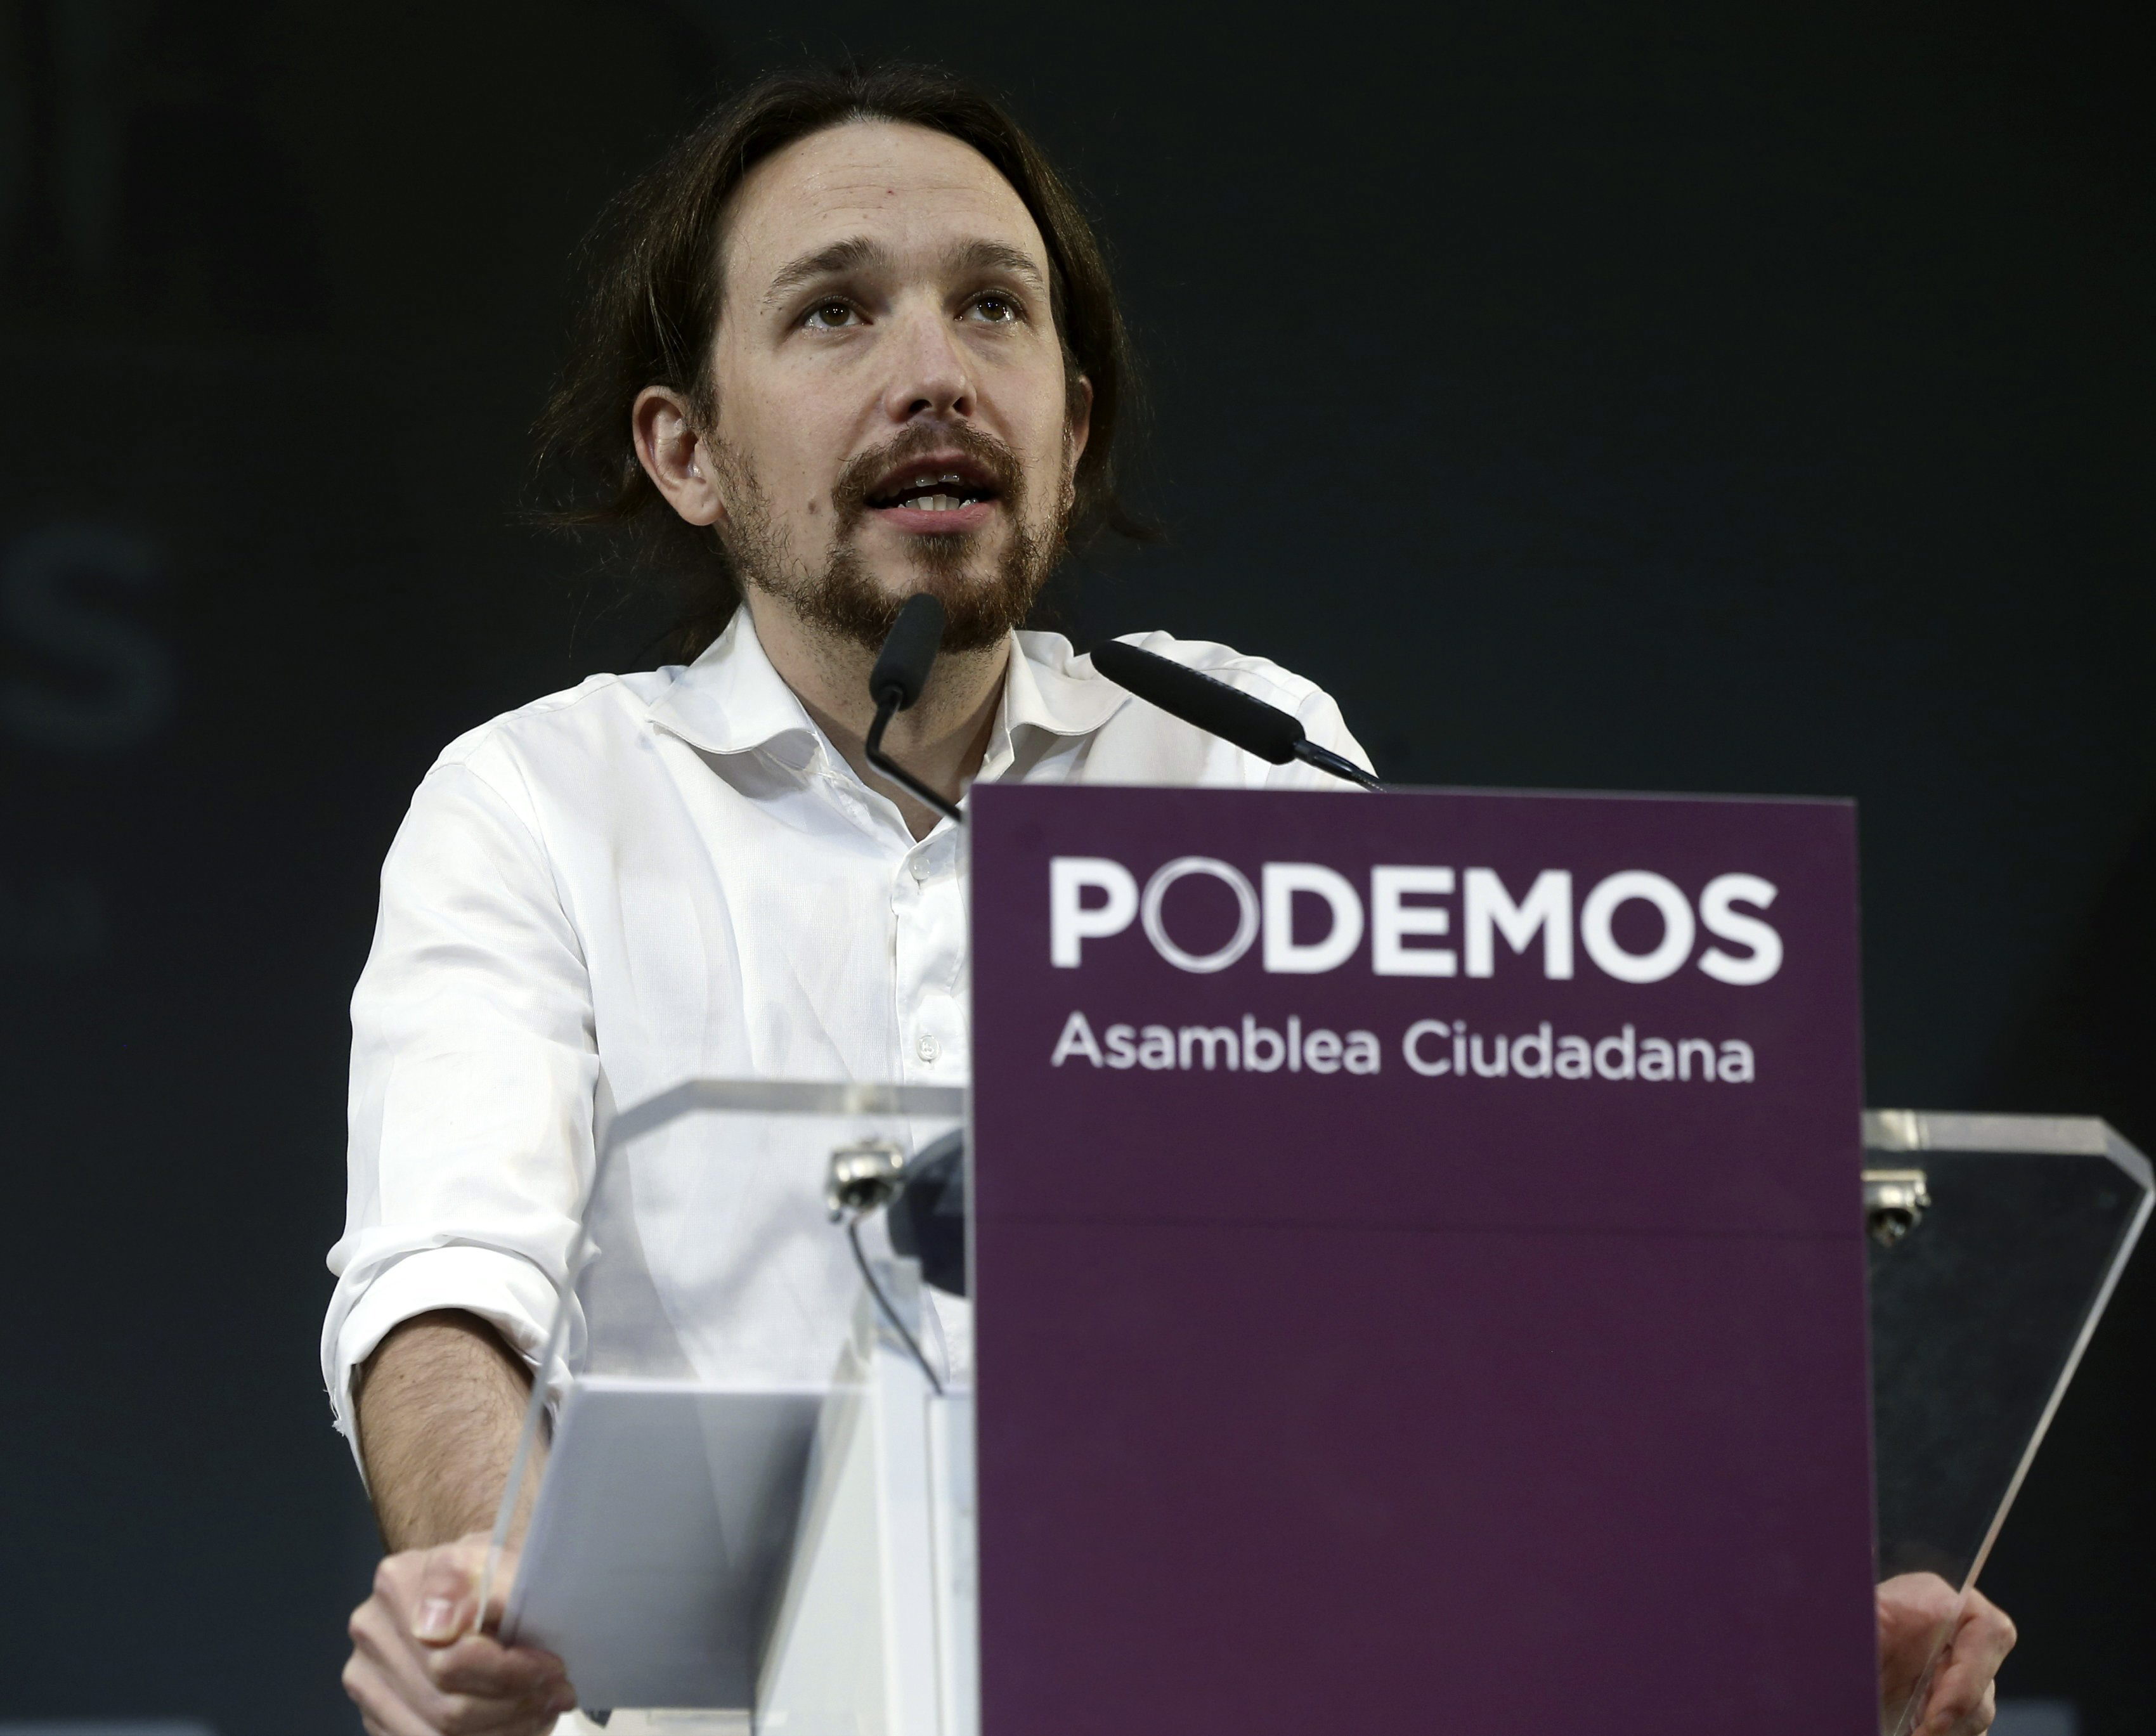 Pablo Iglesias, por el partido Podemos, expresa su descontento con políticas en contra de los Derechos Humanos durante el encuentro en el Pleno de la Cámara Baja.